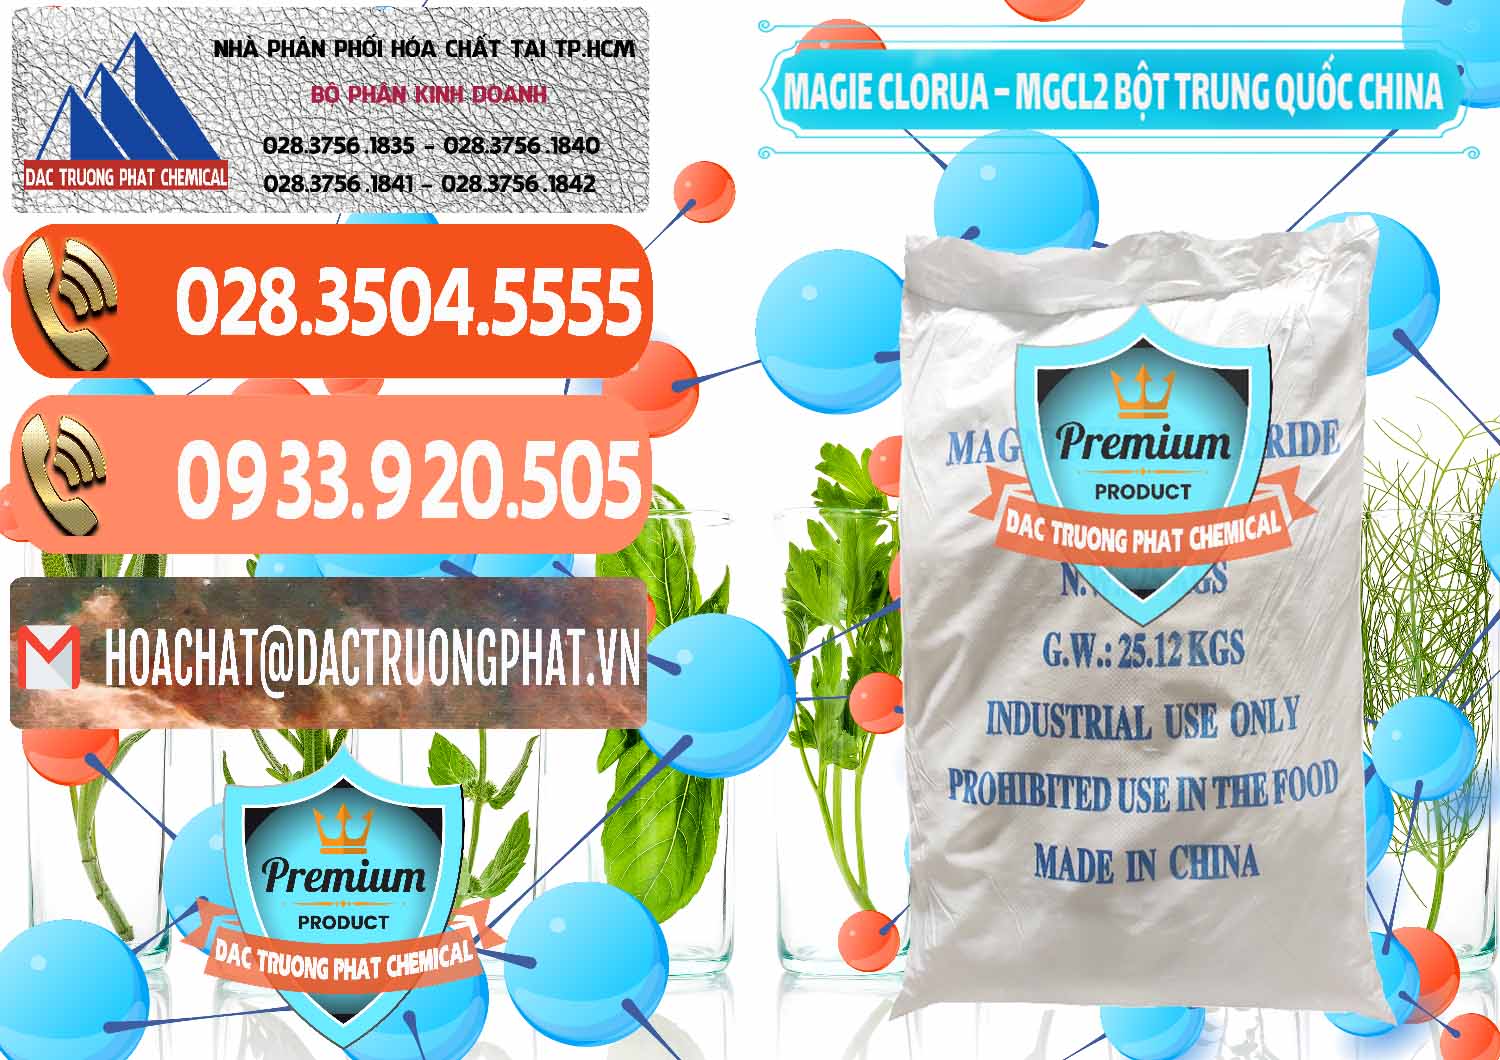 Cty chuyên bán & phân phối Magie Clorua – MGCL2 96% Dạng Bột Bao Chữ Xanh Trung Quốc China - 0207 - Chuyên bán & cung cấp hóa chất tại TP.HCM - hoachatmientay.com